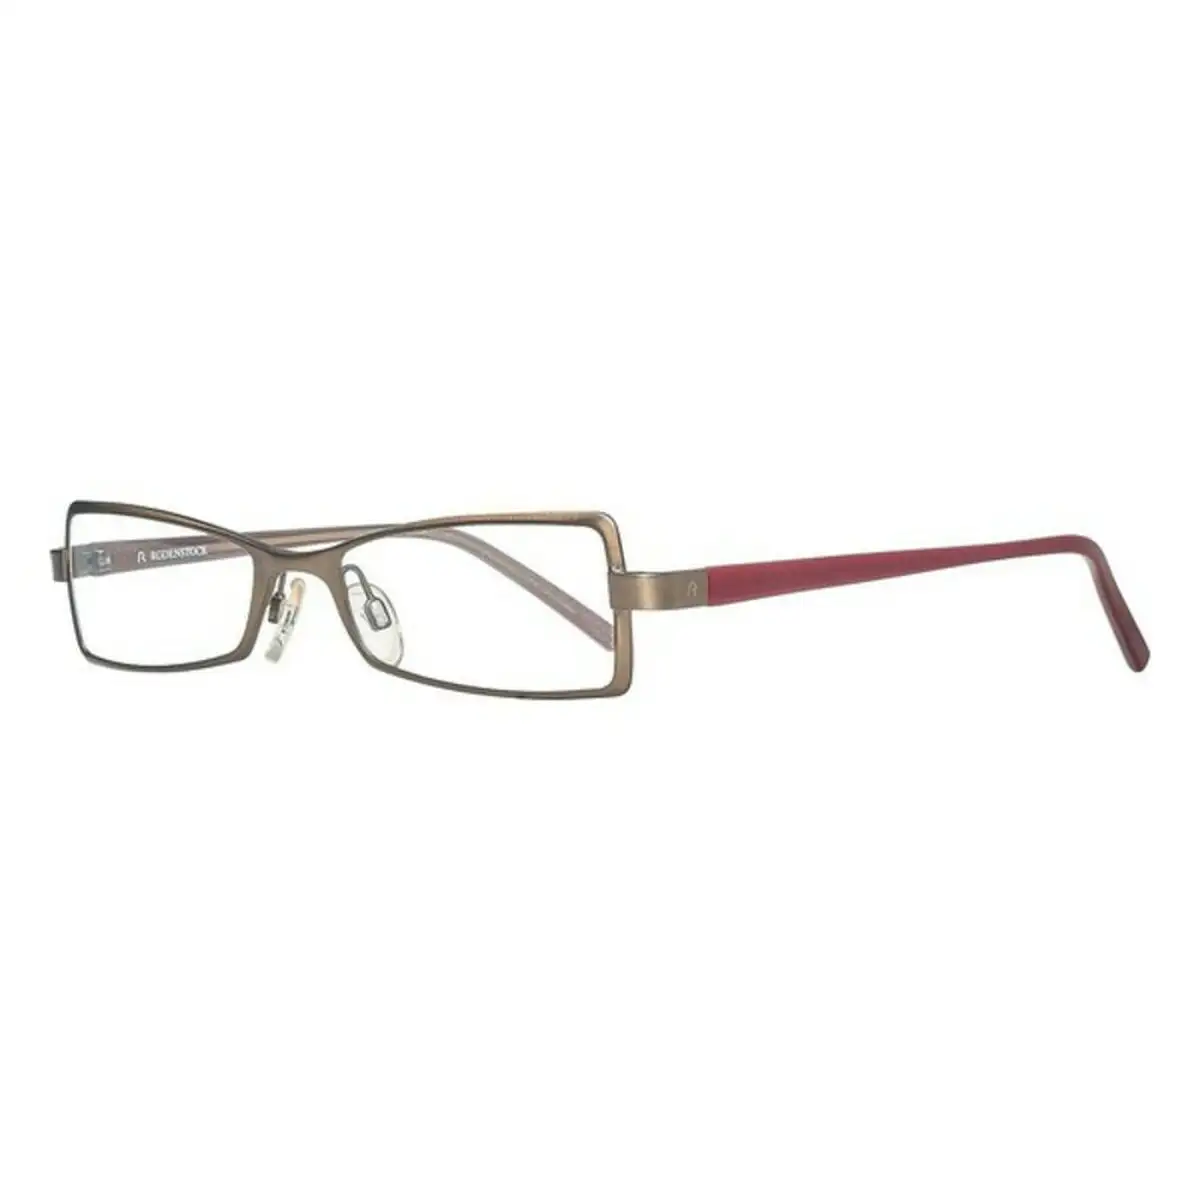 Monture de lunettes femme rodenstock r4701 d marron o 49 mm _6191. DIAYTAR SENEGAL - Où Chaque Produit a sa Place. Parcourez notre catalogue et choisissez des articles qui s'intègrent parfaitement à votre style et à votre espace.